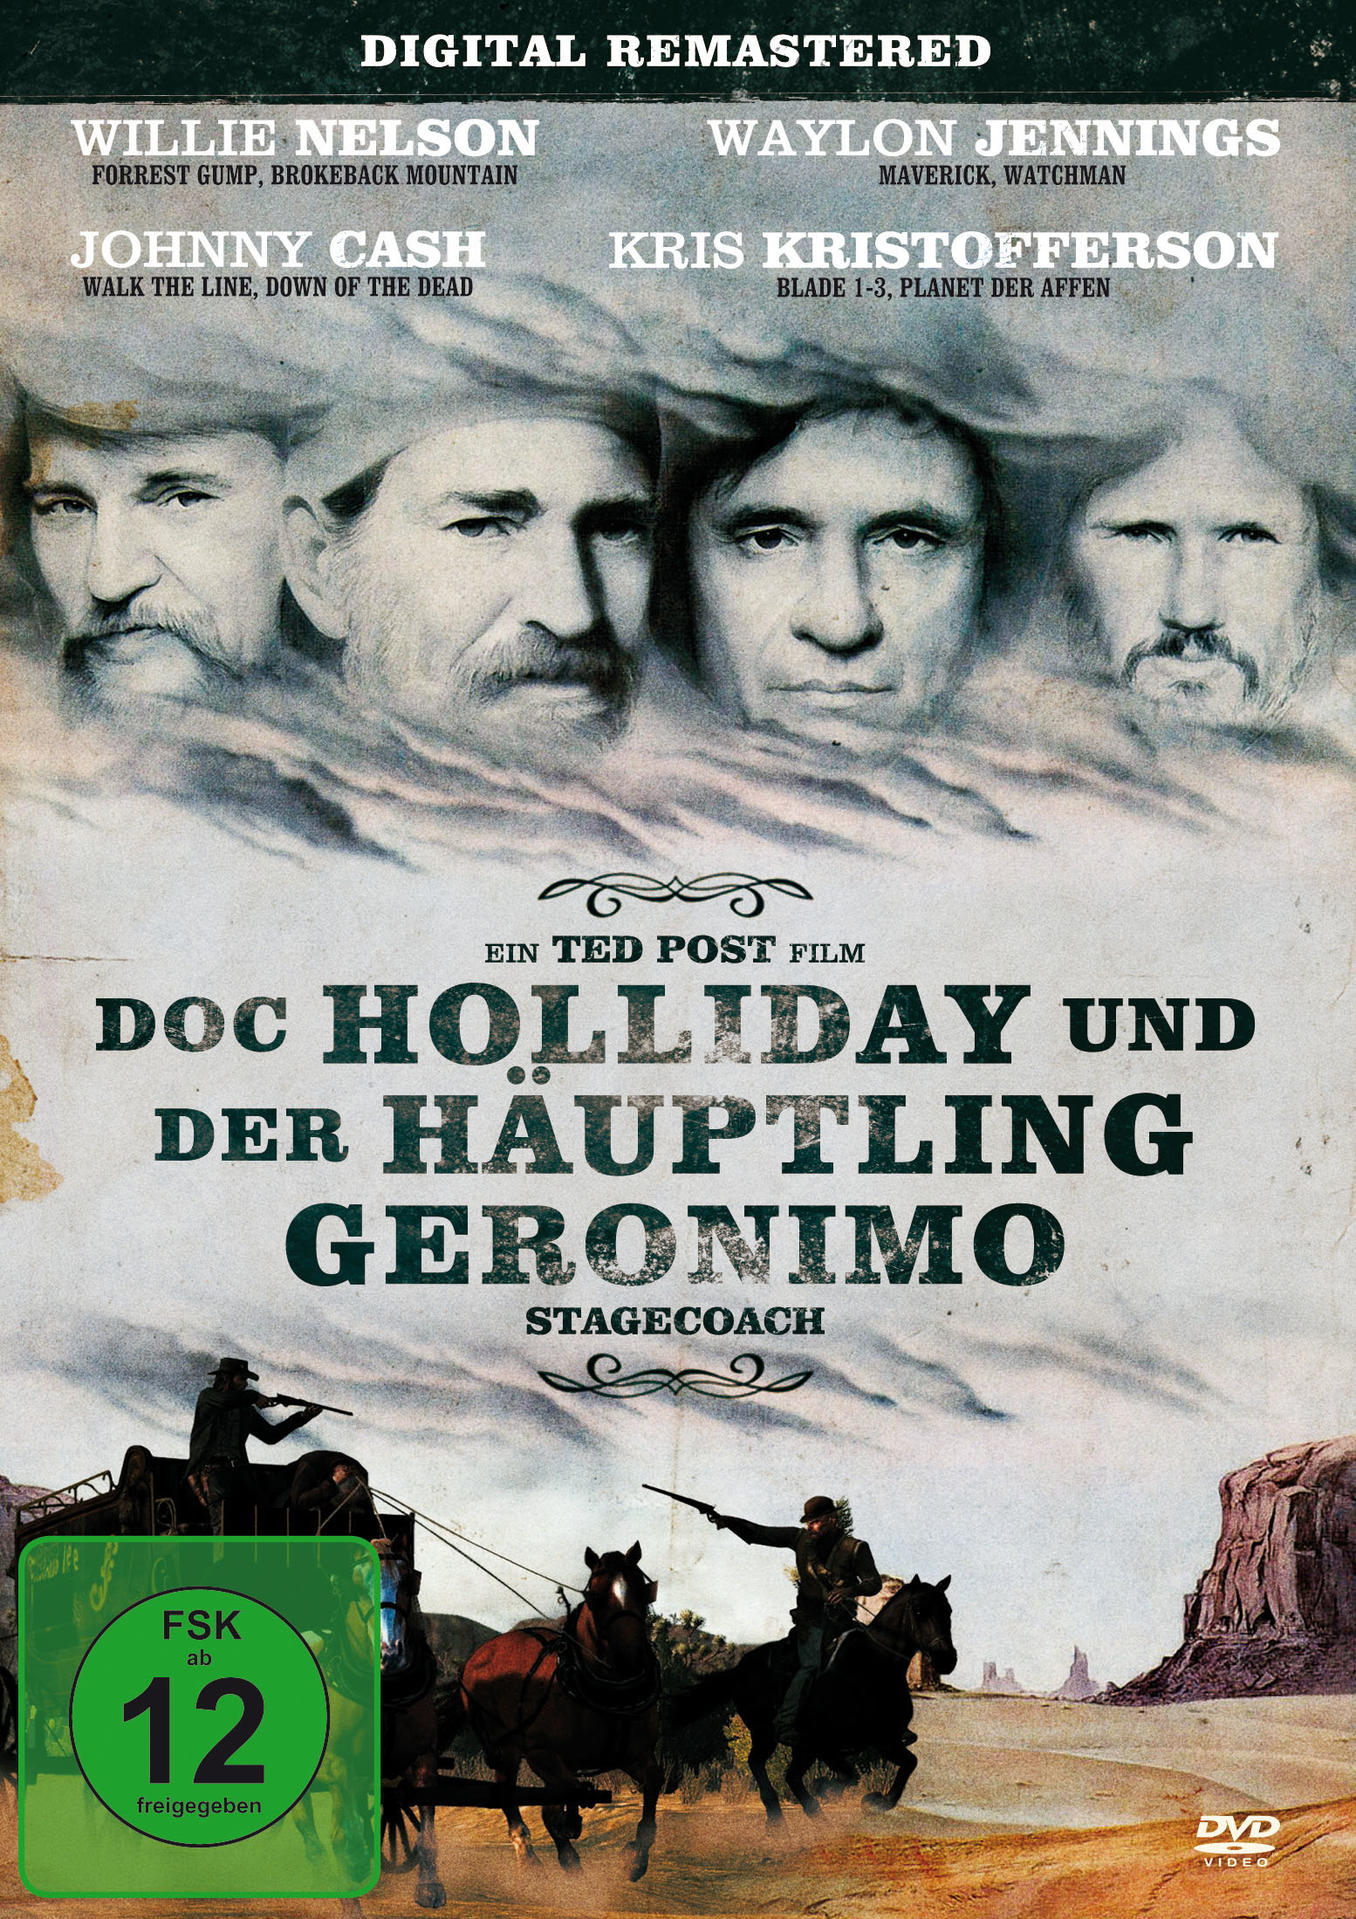 Häuptling Doc Holliday Geronimo der und DVD